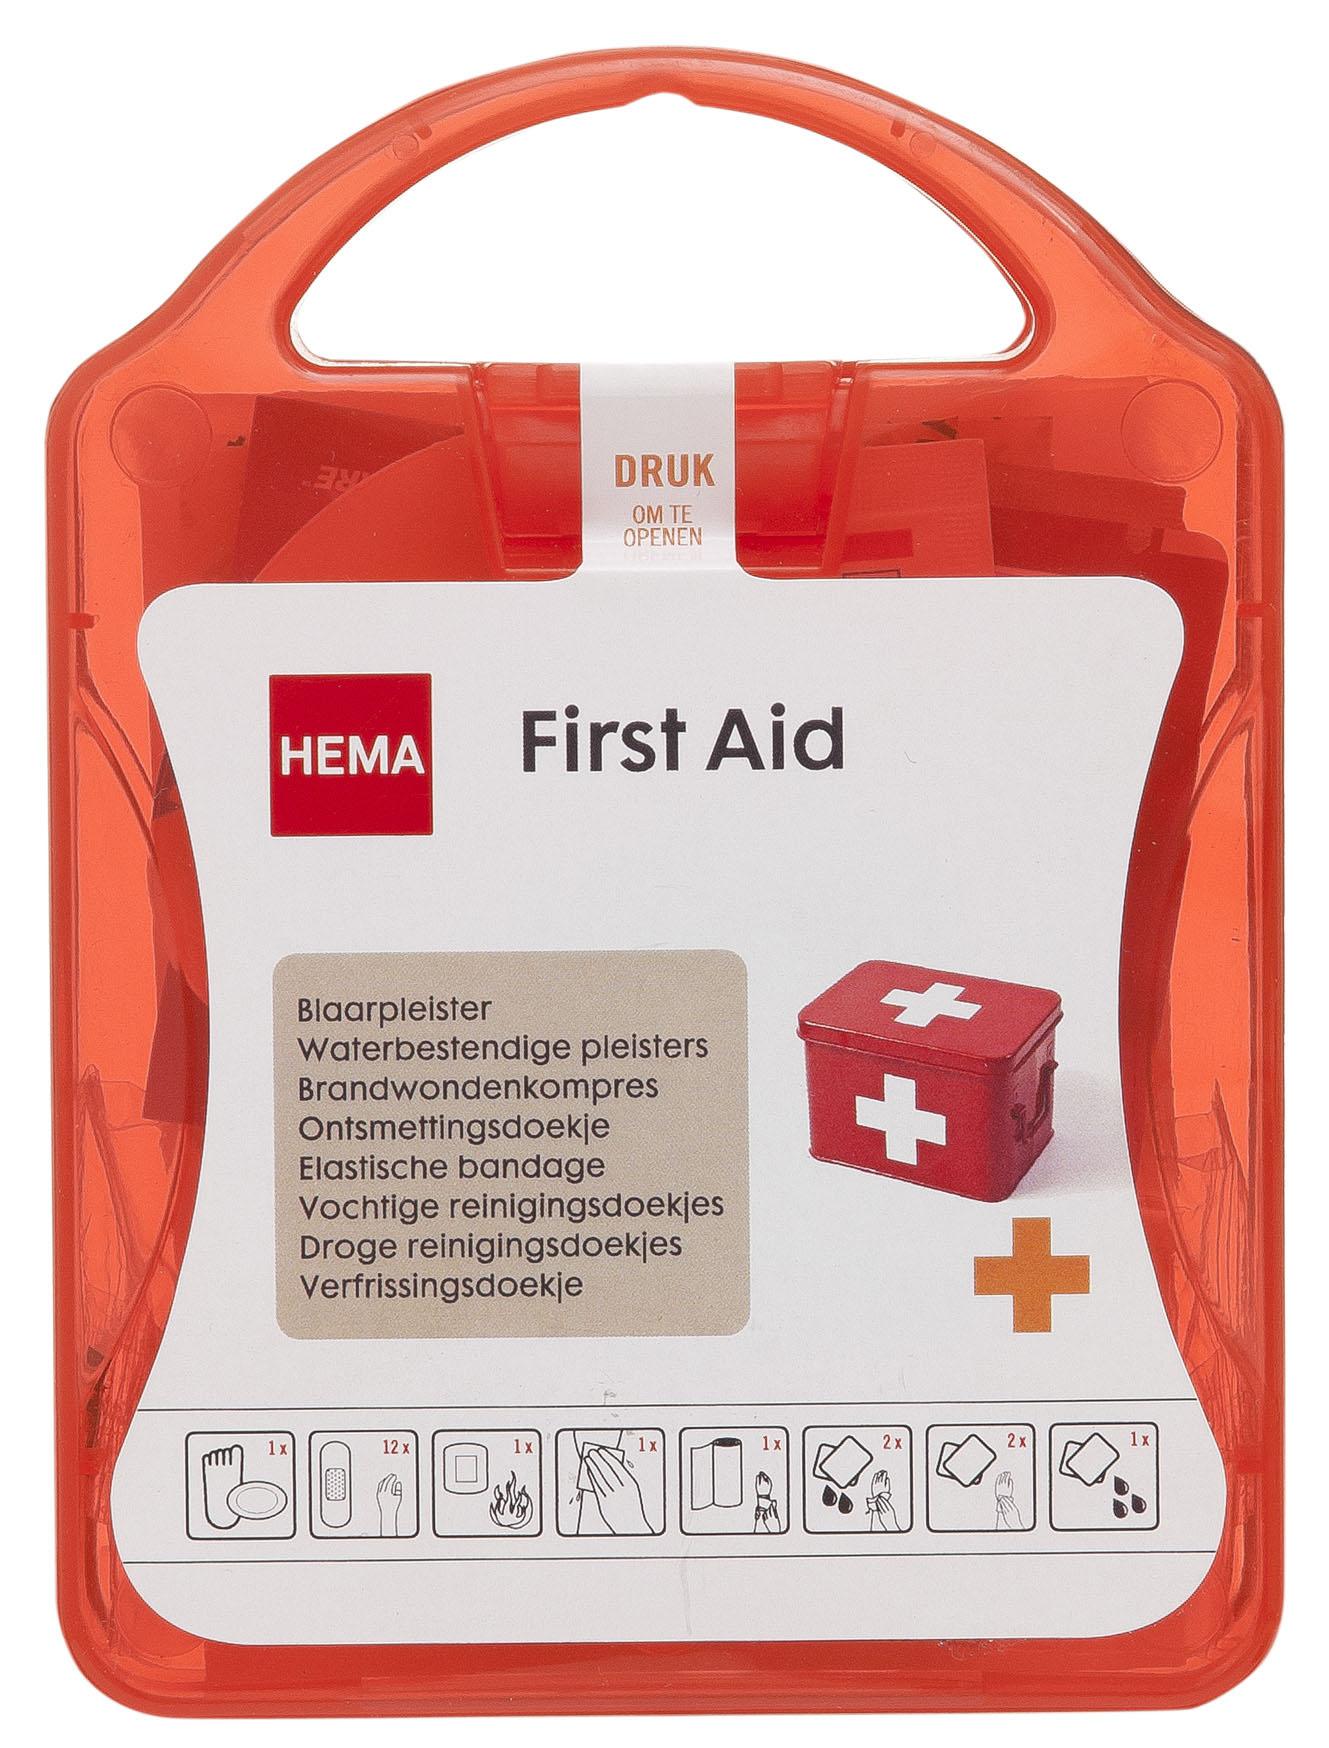 Hema First Aid Kit - €3.75